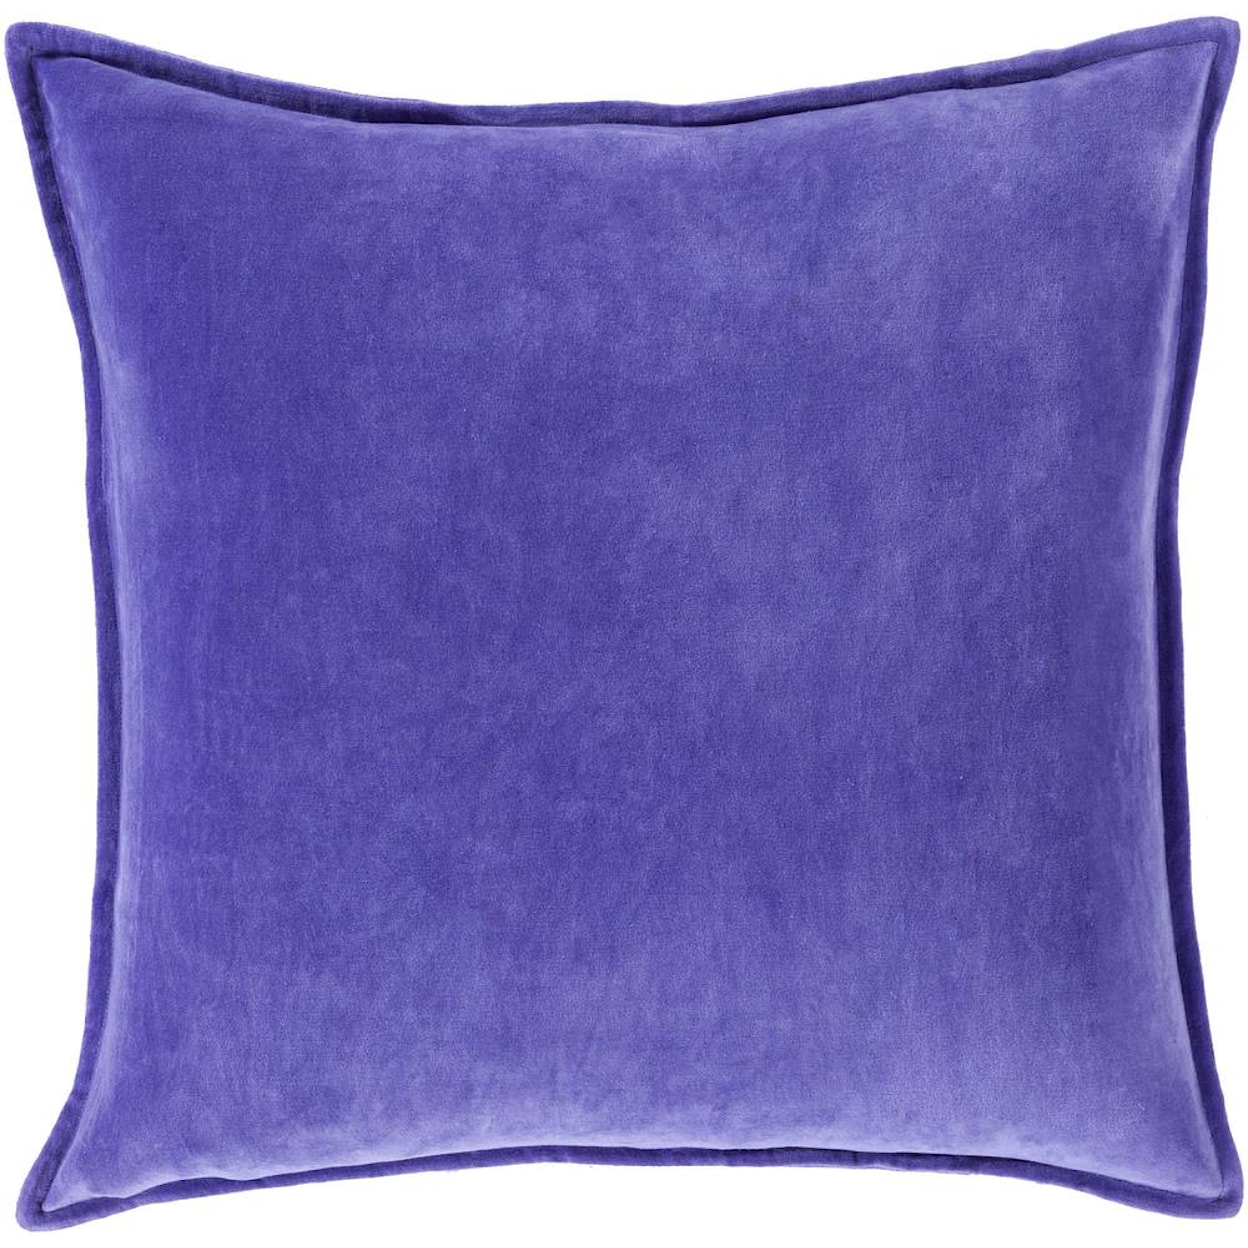 Surya Pillows 20" x 20" Decorative Pillow